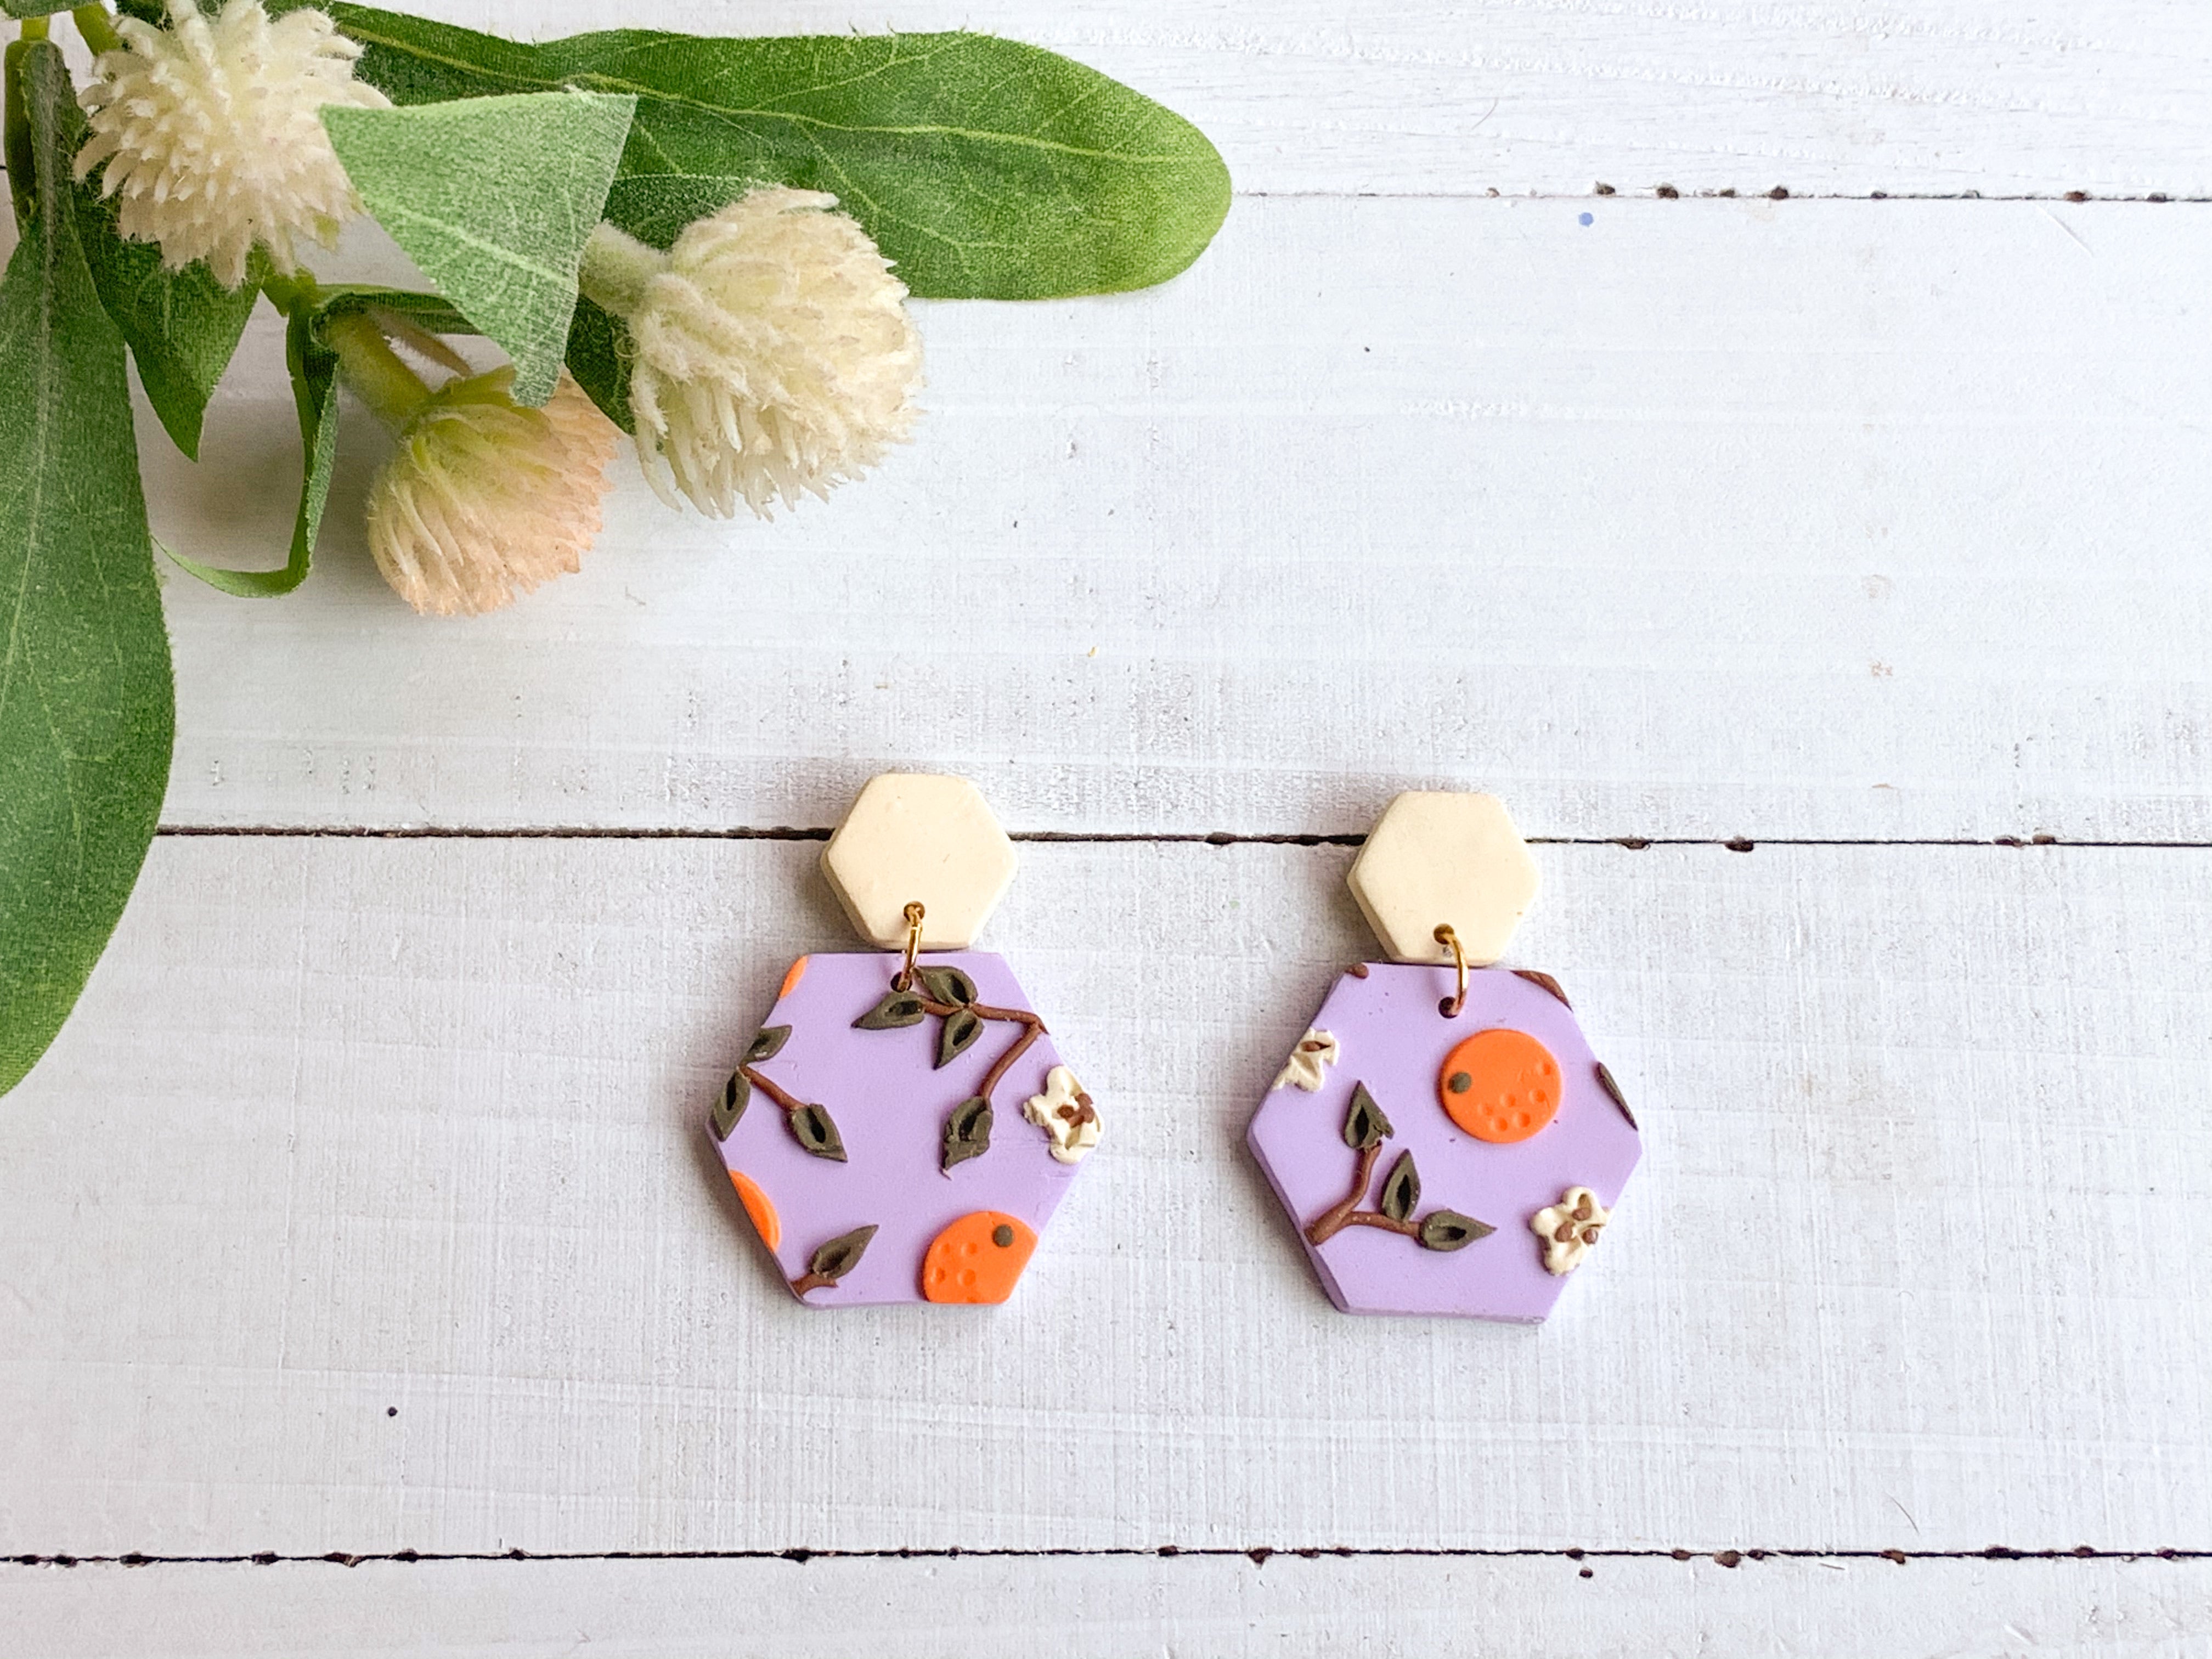 Orange Lavender Slab Earrings (Hexagon)